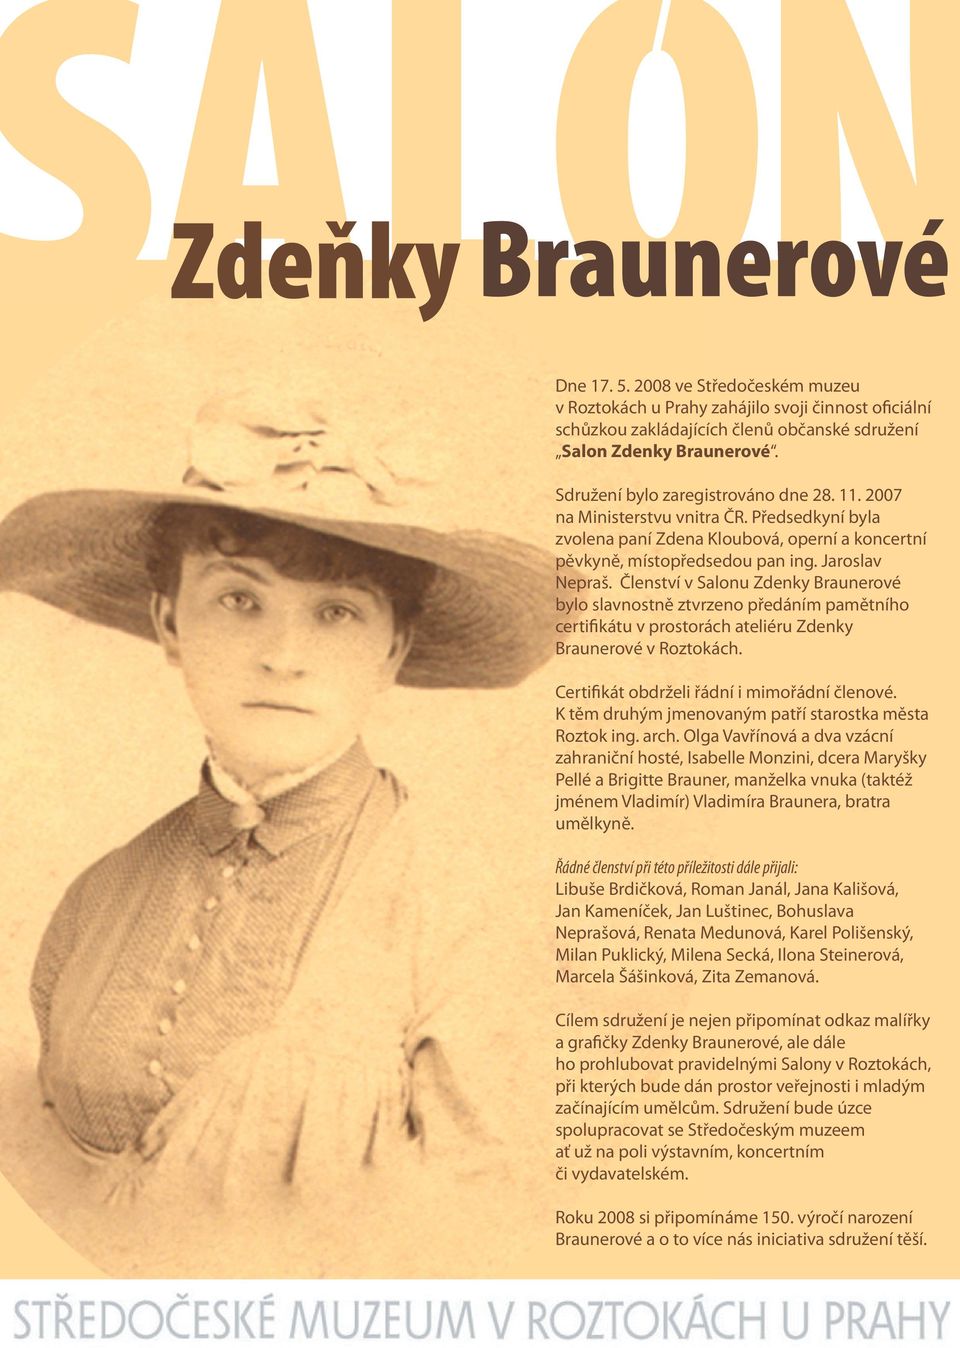 Členství v Salonu Zdenky Braunerové bylo slavnostně ztvrzeno předáním pamětního certifikátu v prostorách ateliéru Zdenky Braunerové v Roztokách. Certifikát obdrželi řádní i mimořádní členové.